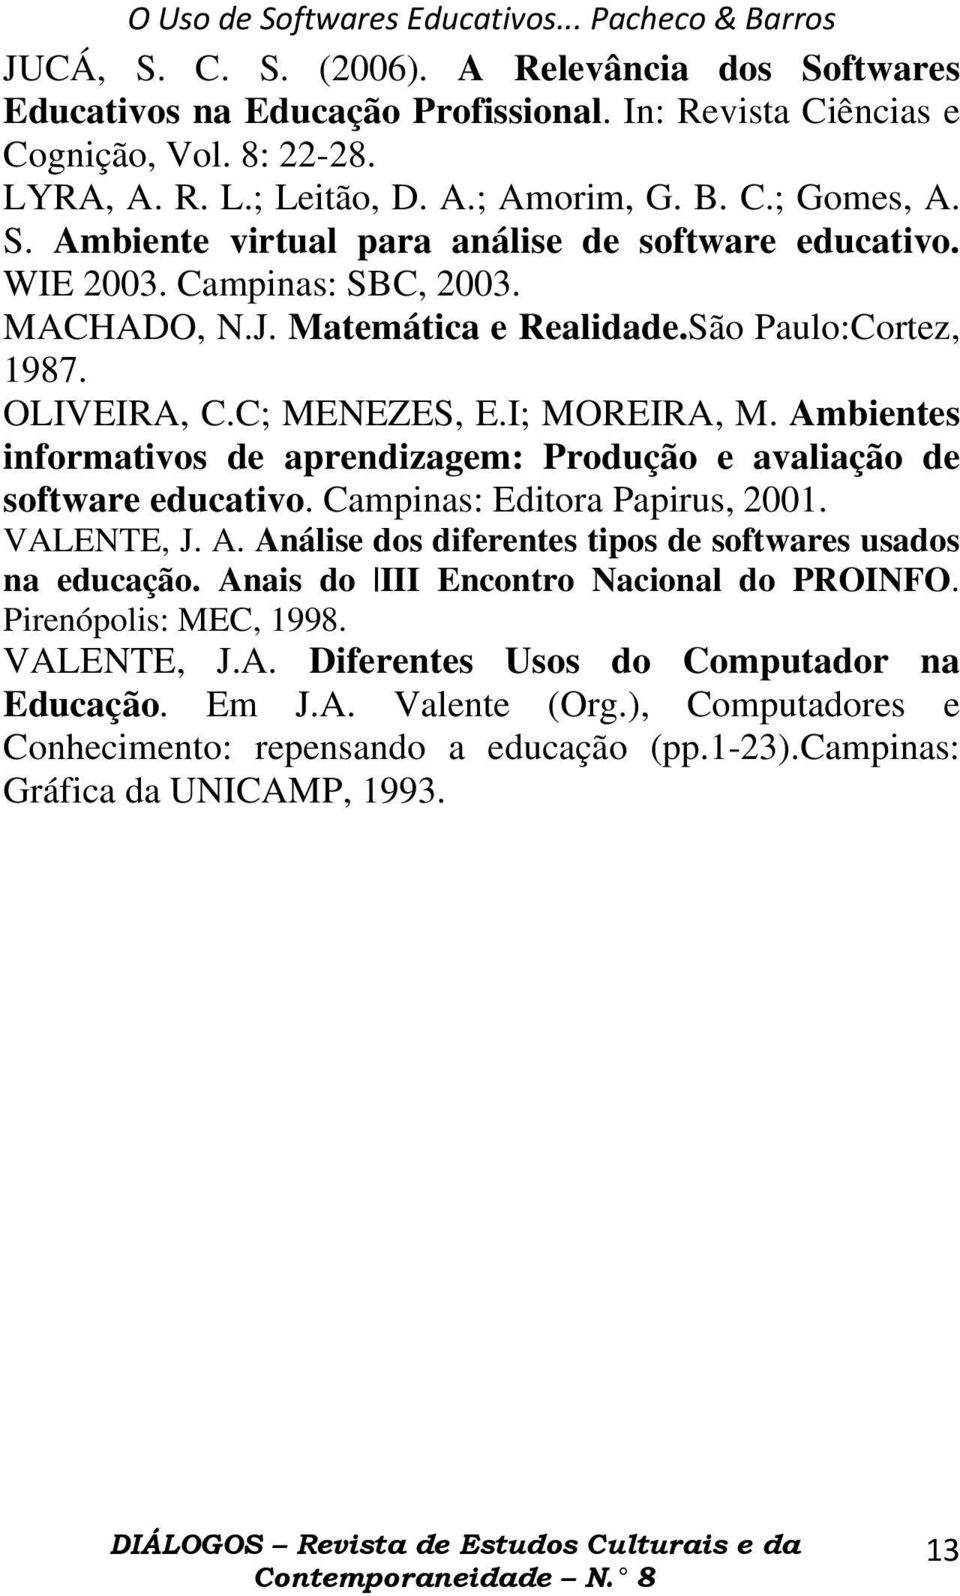 Ambientes informativos de aprendizagem: Produção e avaliação de software educativo. Campinas: Editora Papirus, 2001. VALENTE, J. A. Análise dos diferentes tipos de softwares usados na educação.